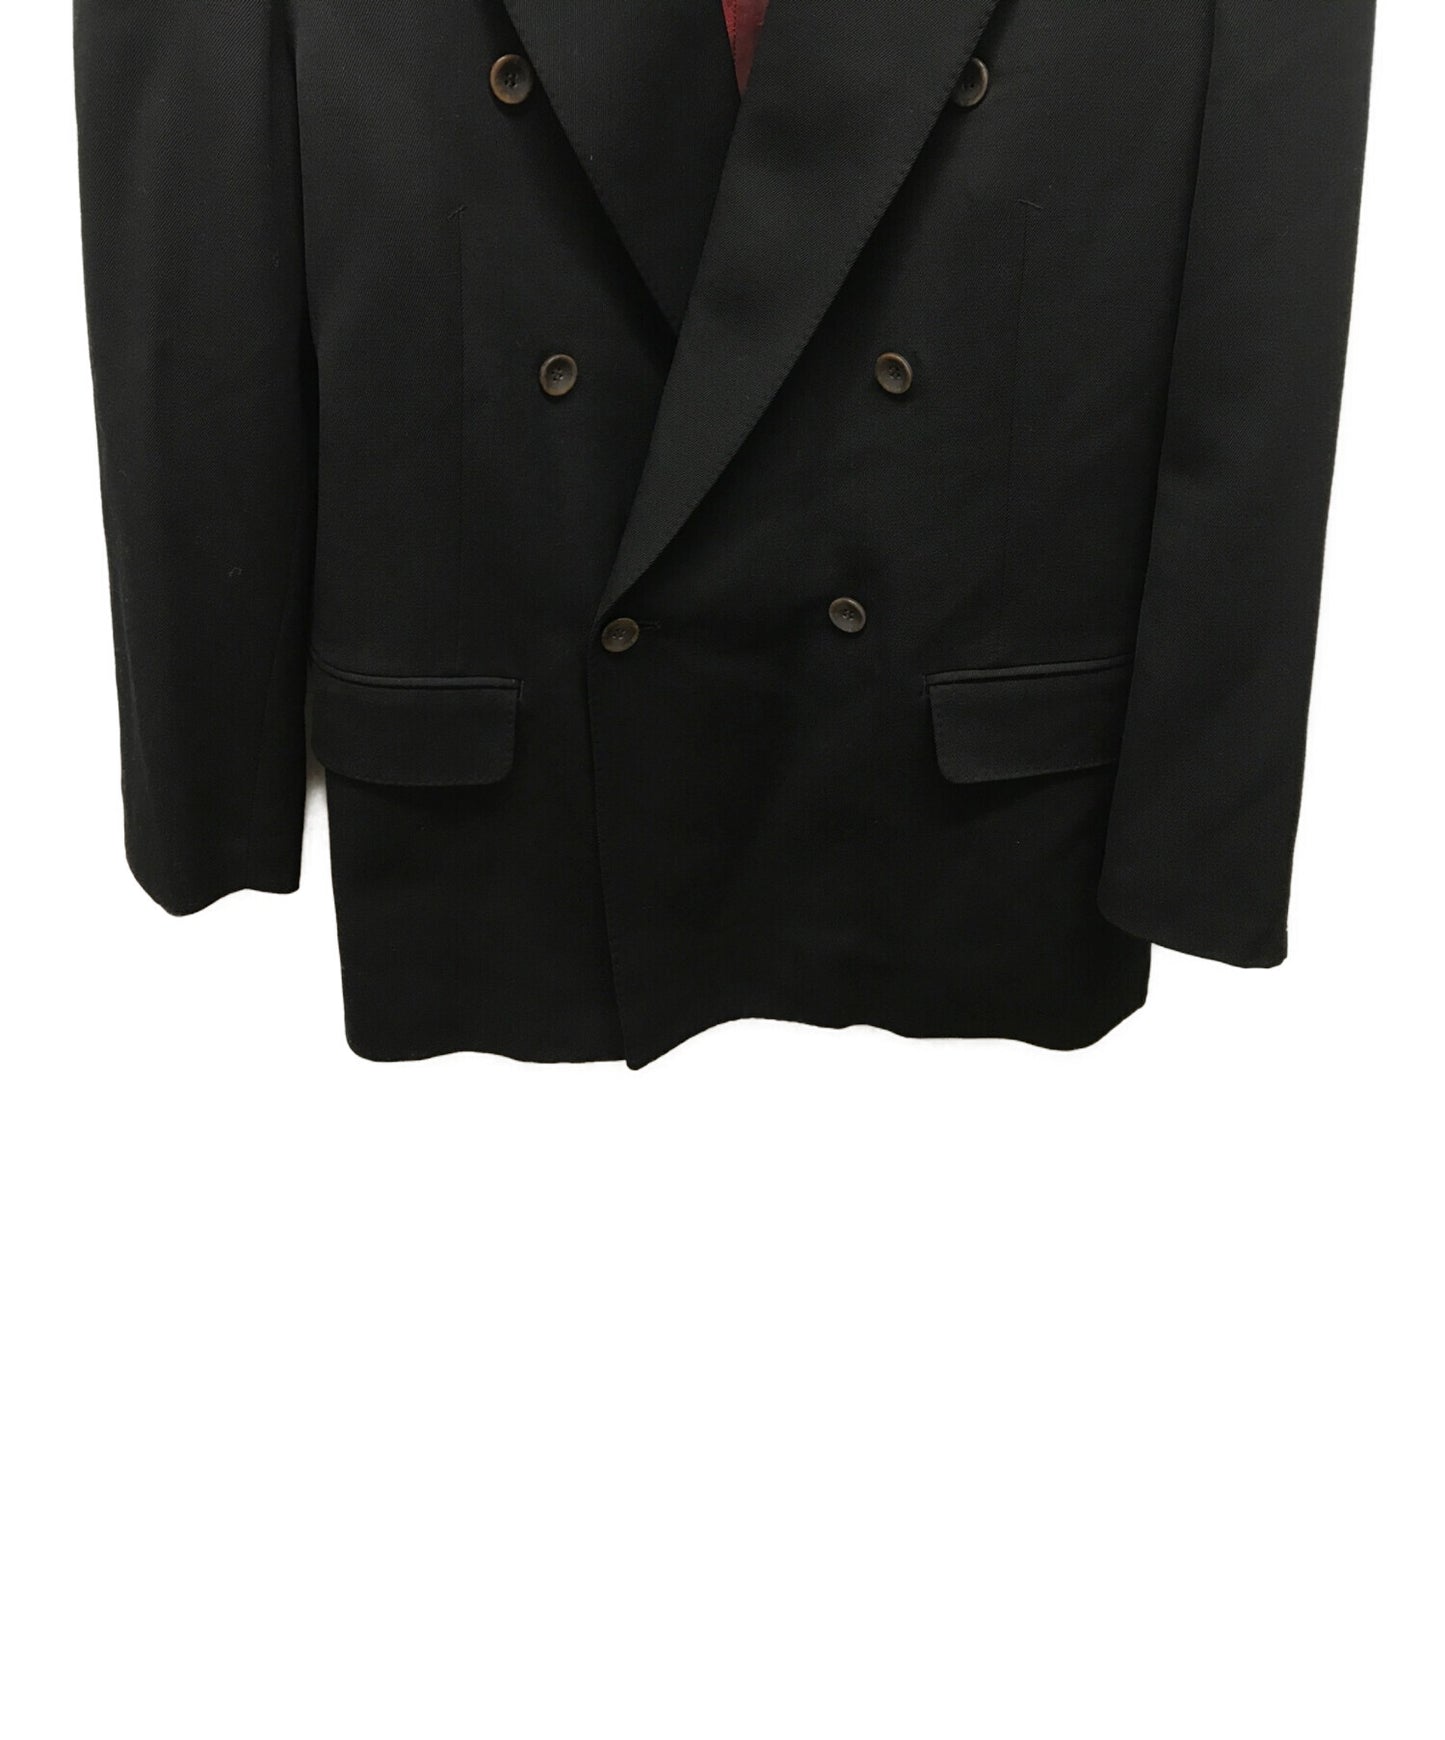 [Pre-owned] Jean Paul GAULTIER jacket